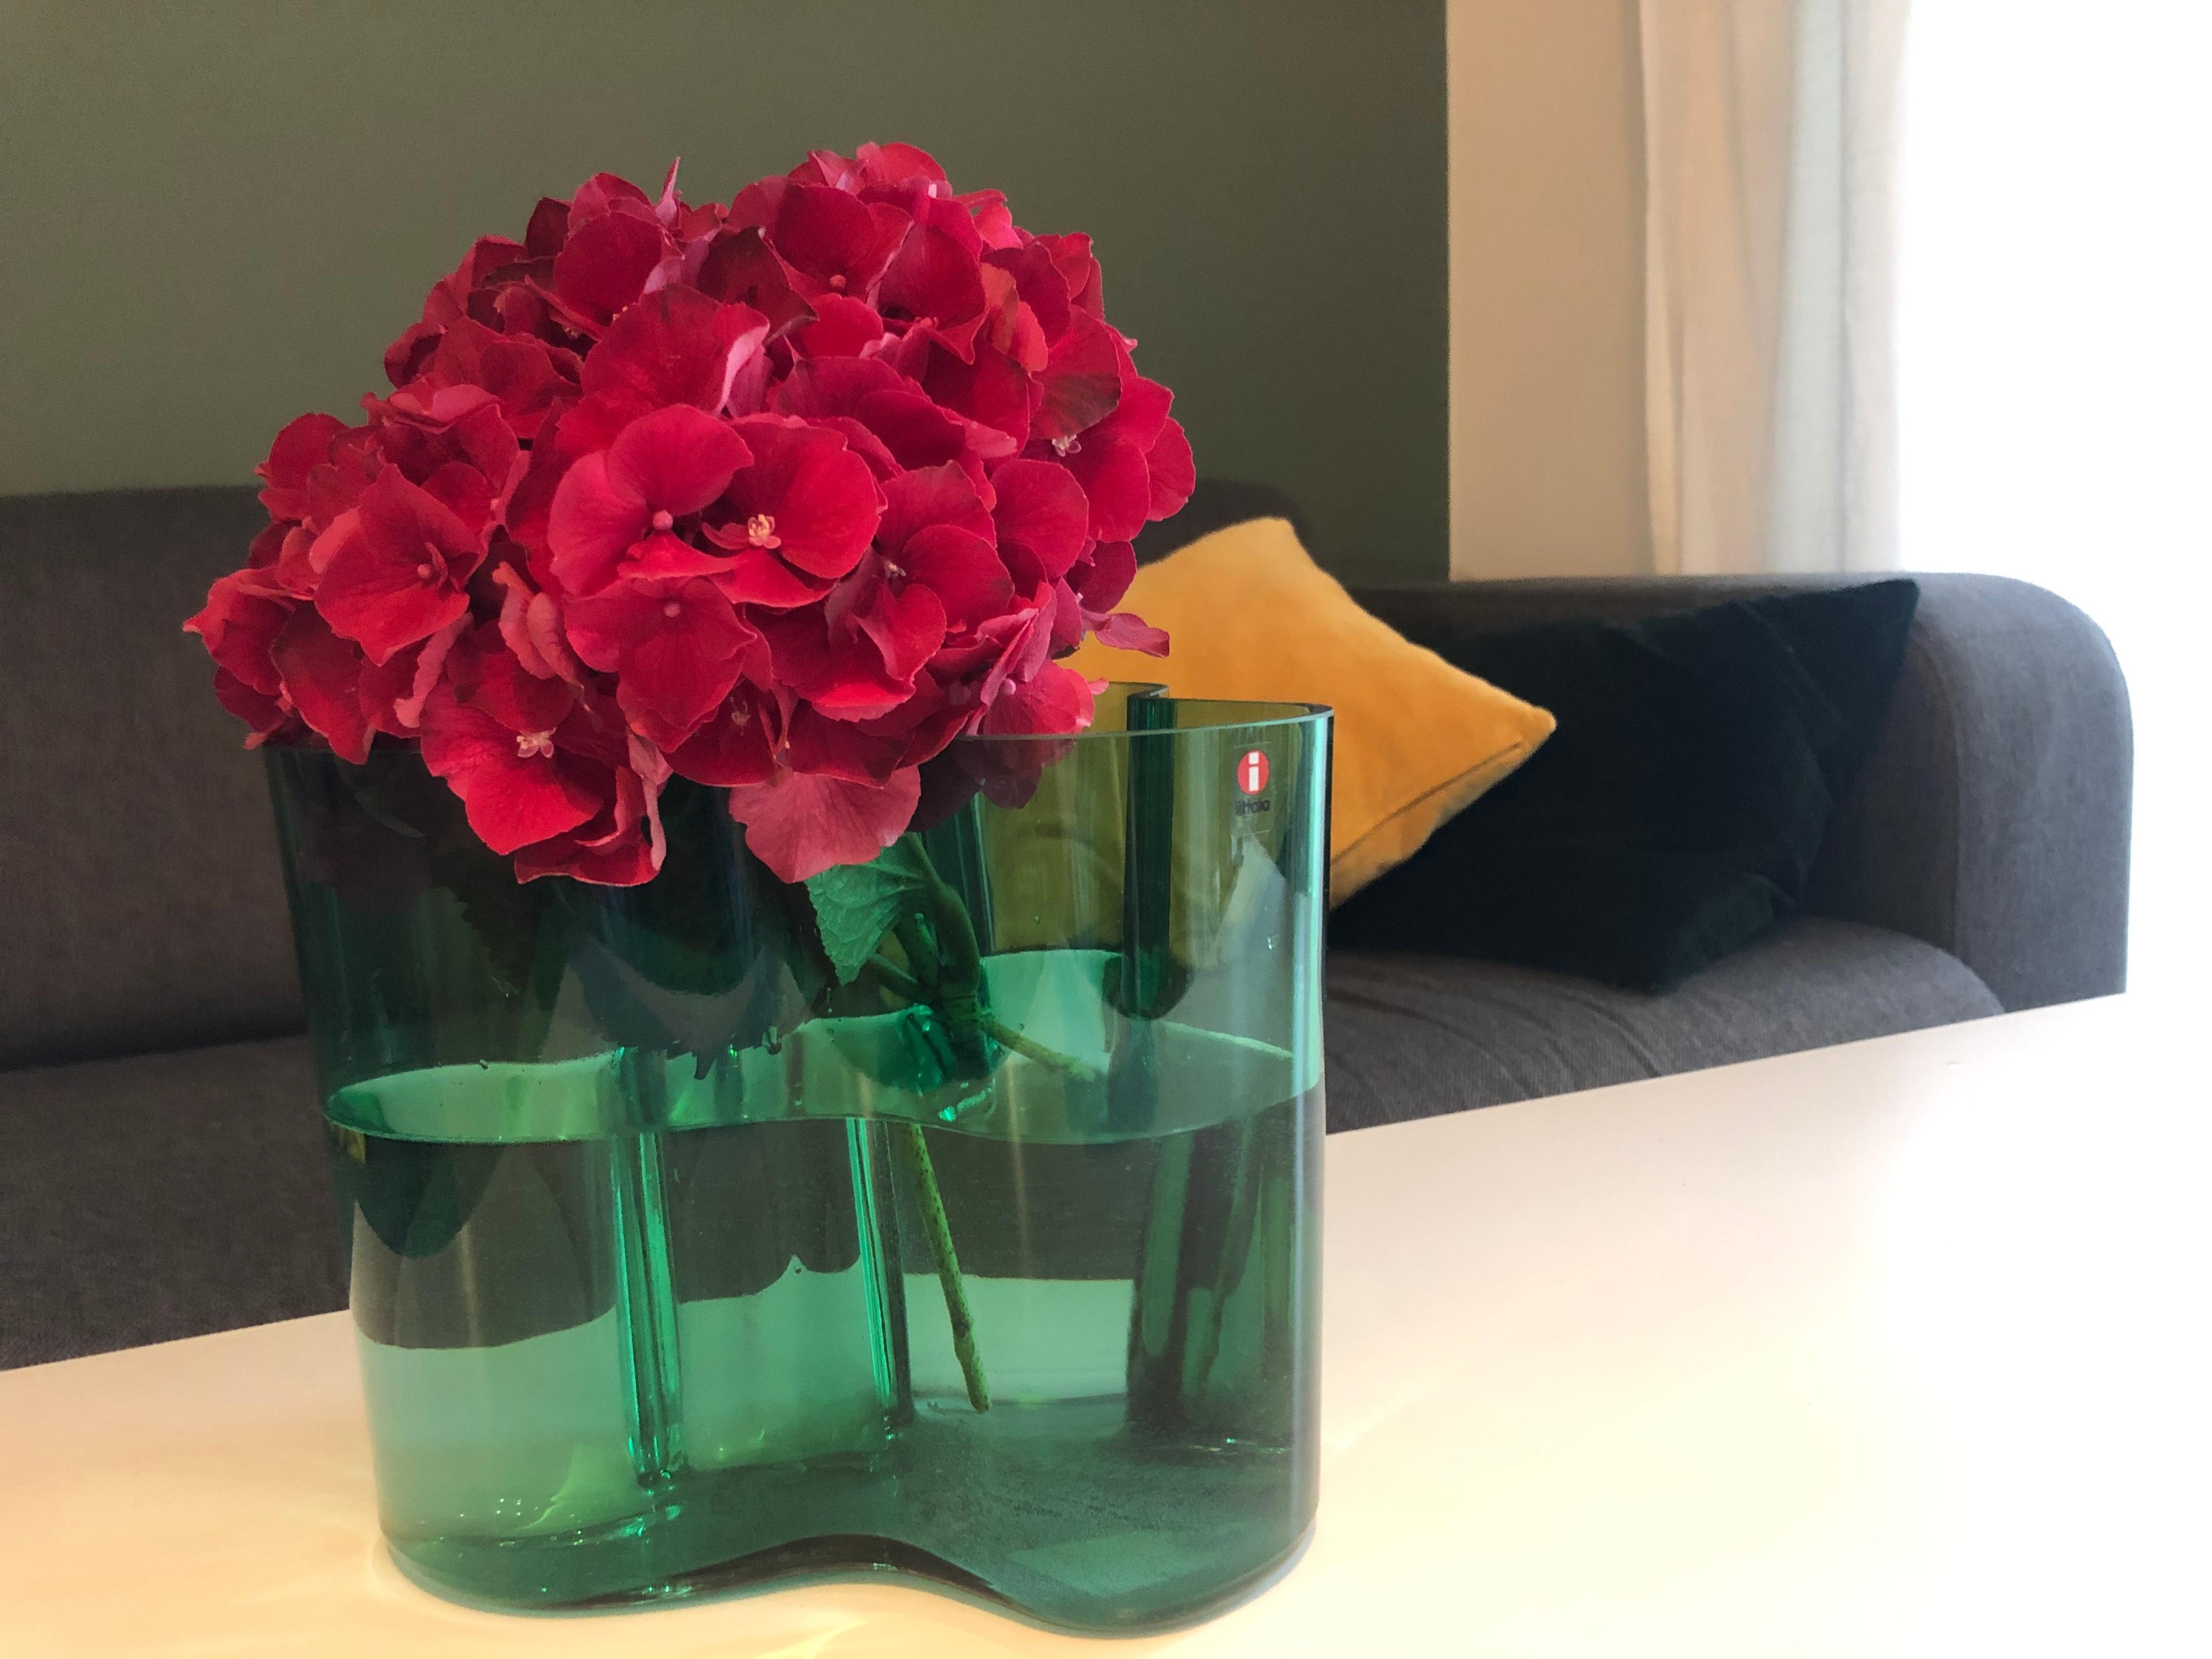 #freshflowerfriday und ein Farbtupfer im Wohnzimmer #vase